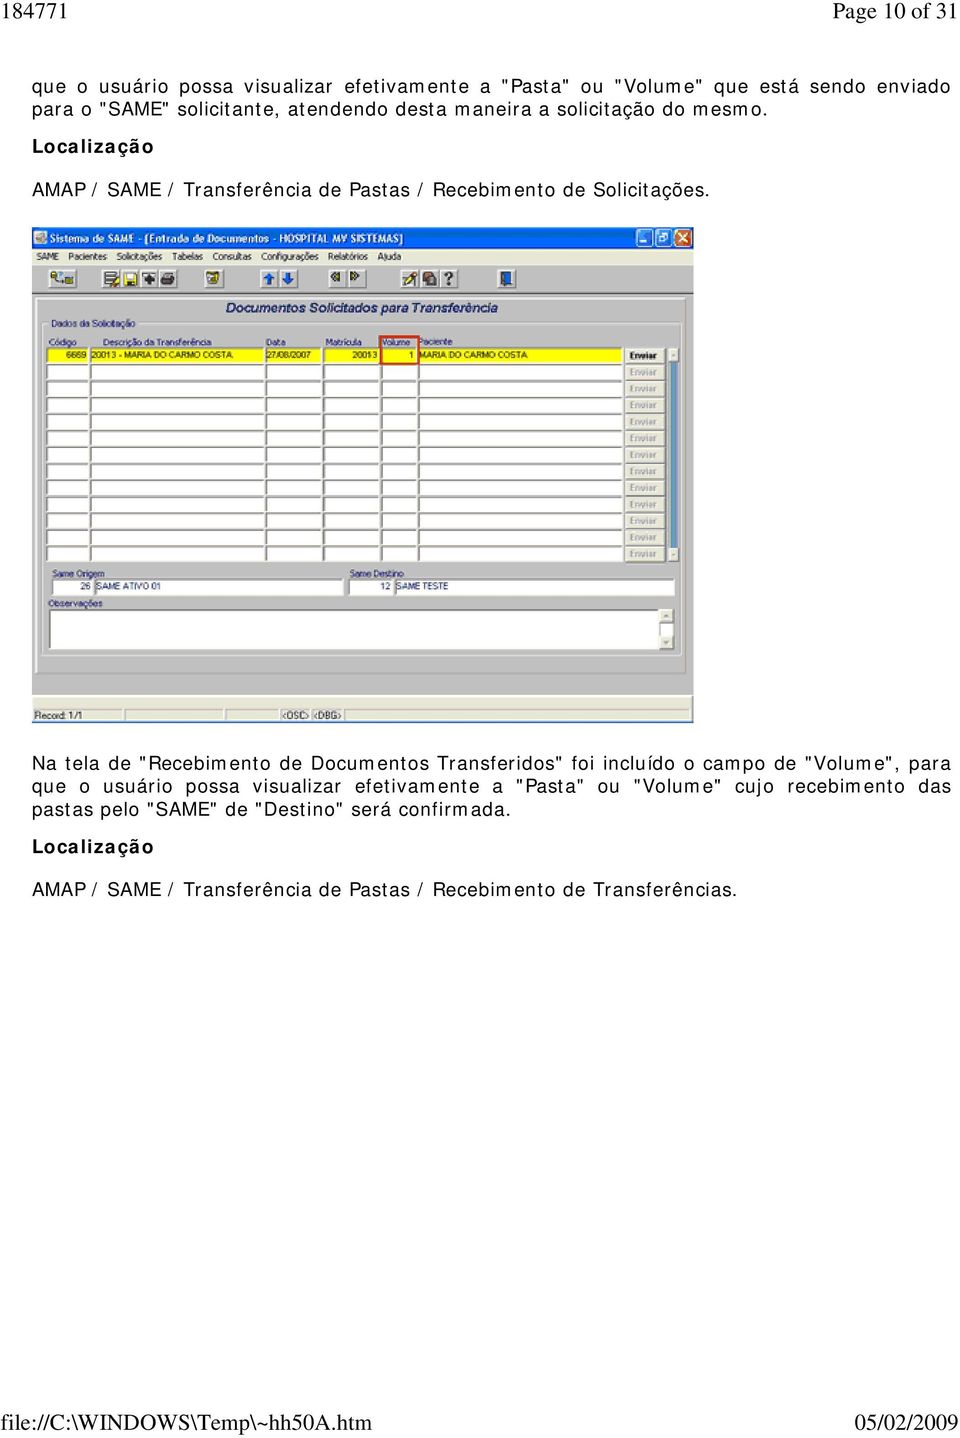 Na tela de "Recebimento de Documentos Transferidos" foi incluído o campo de "Volume", para que o usuário possa visualizar efetivamente